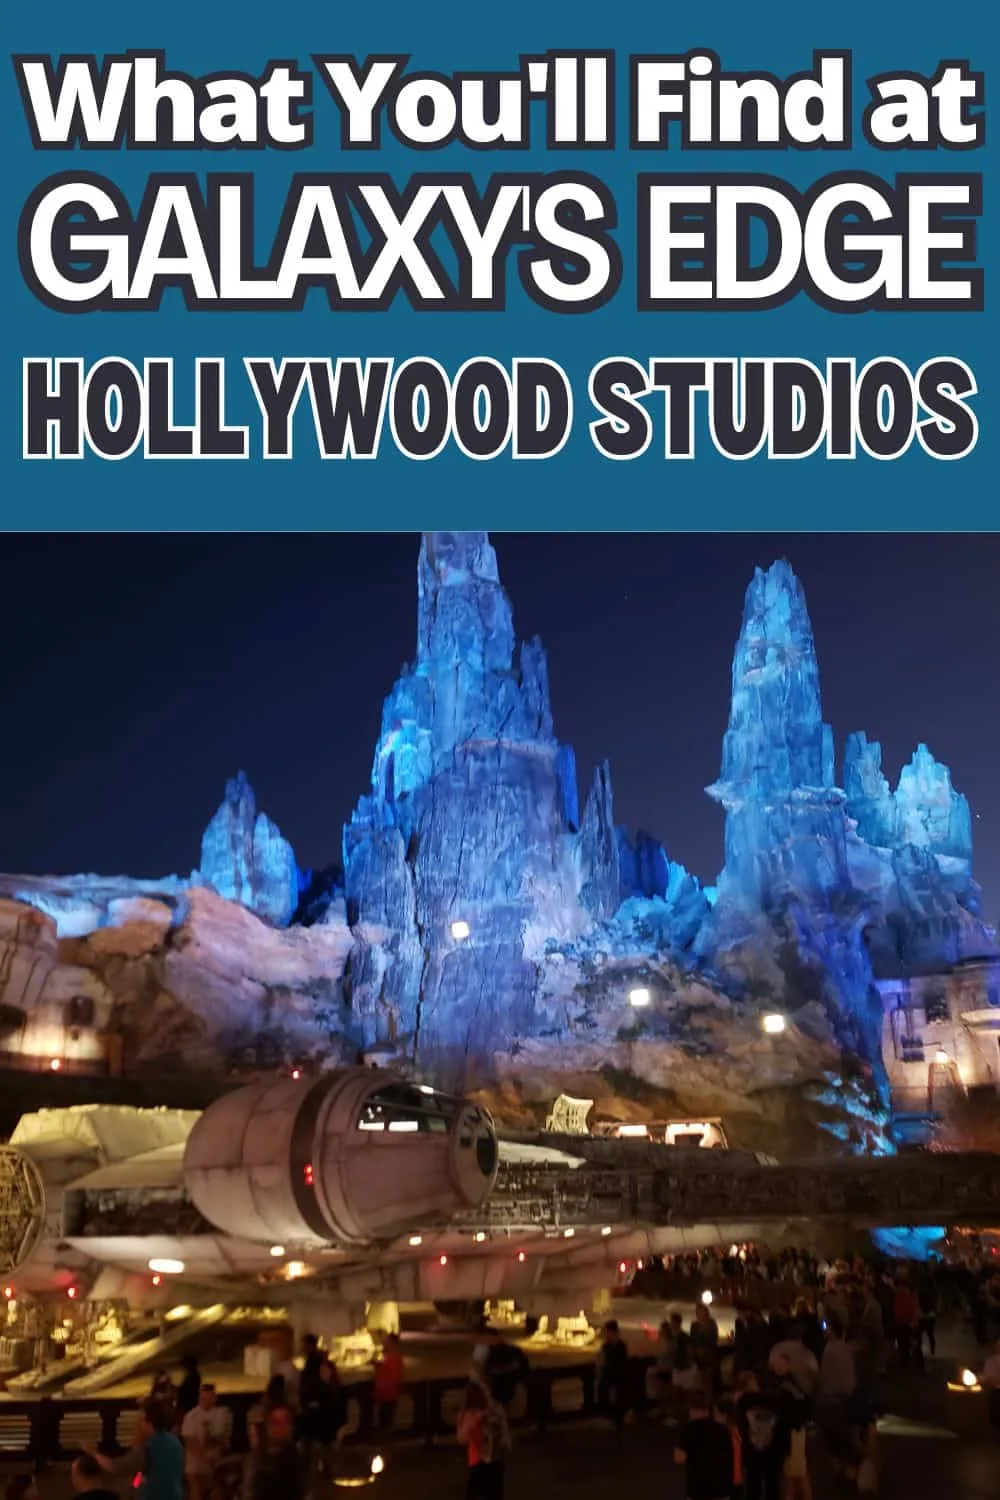 Galaxy's Edge in Disney World Hollywood Studios